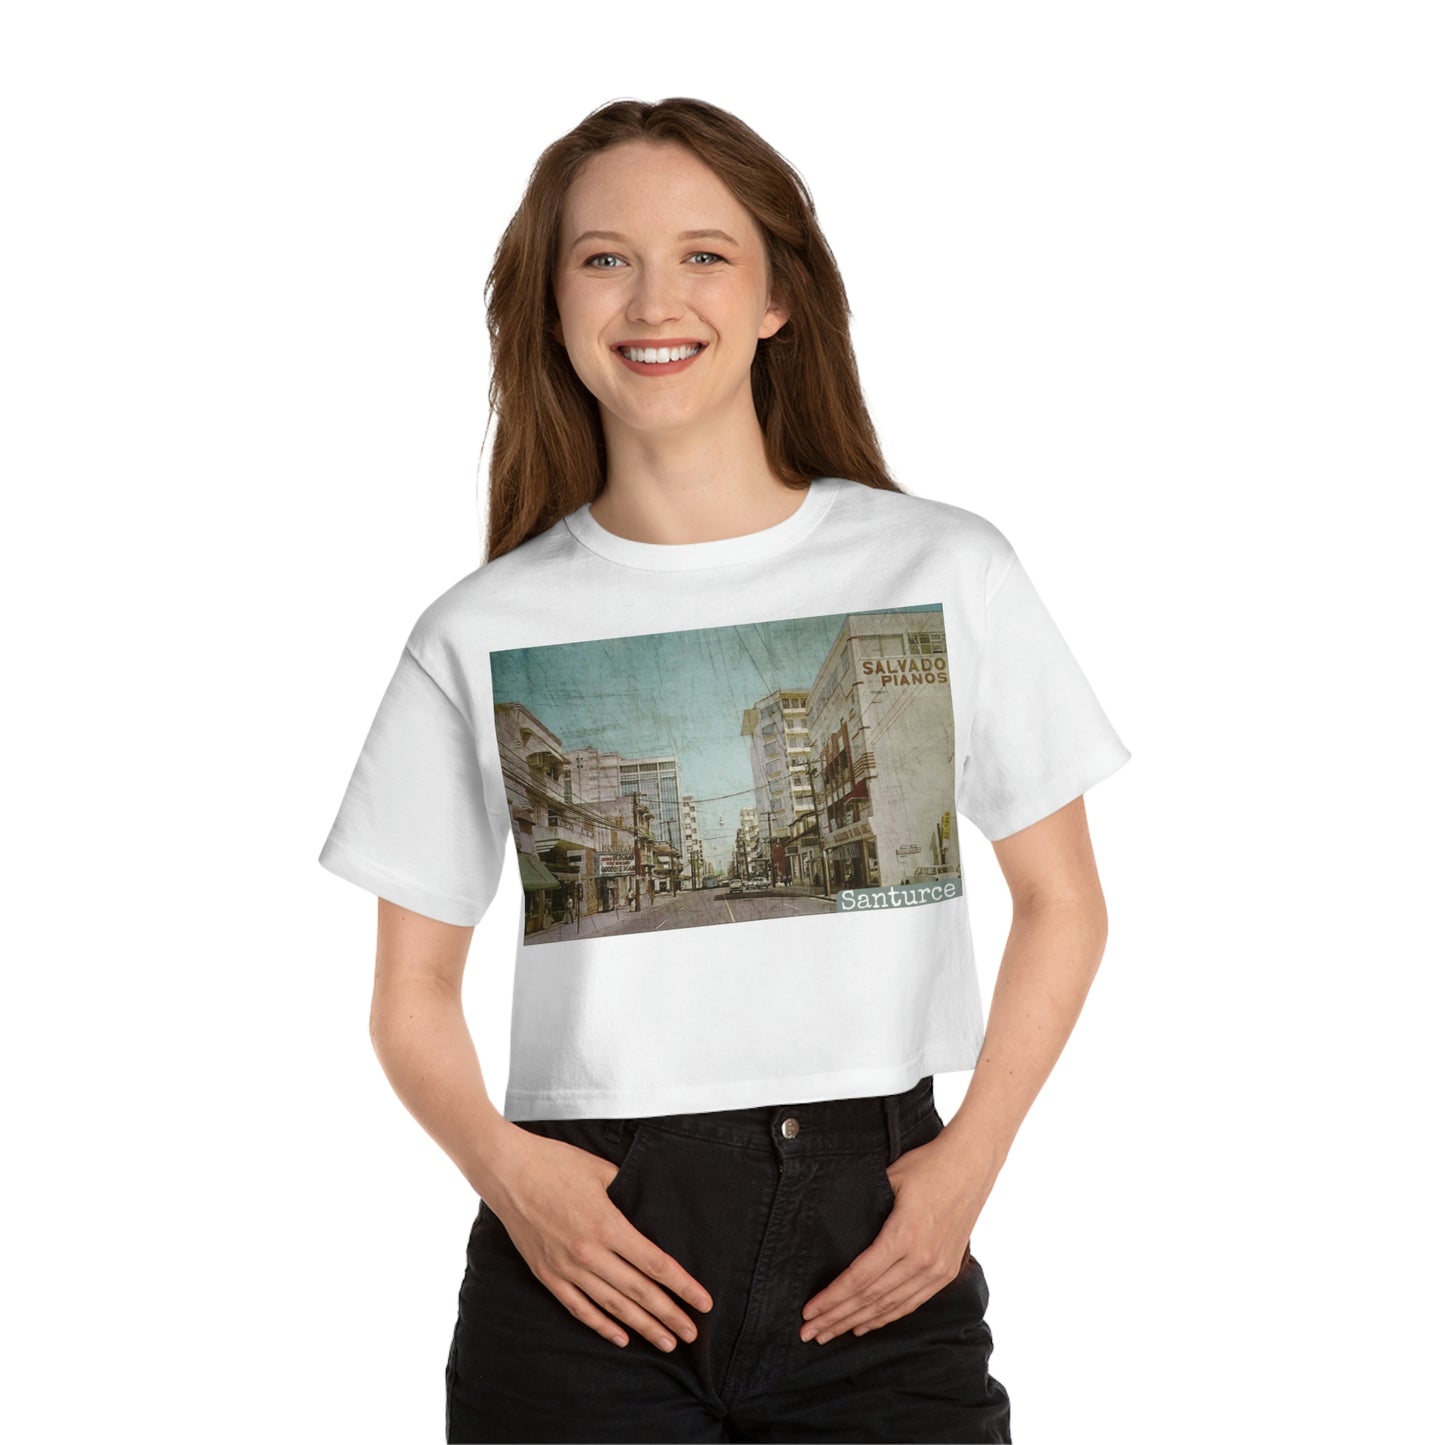 "Yo soy de... Santurce" - Camiseta corta 